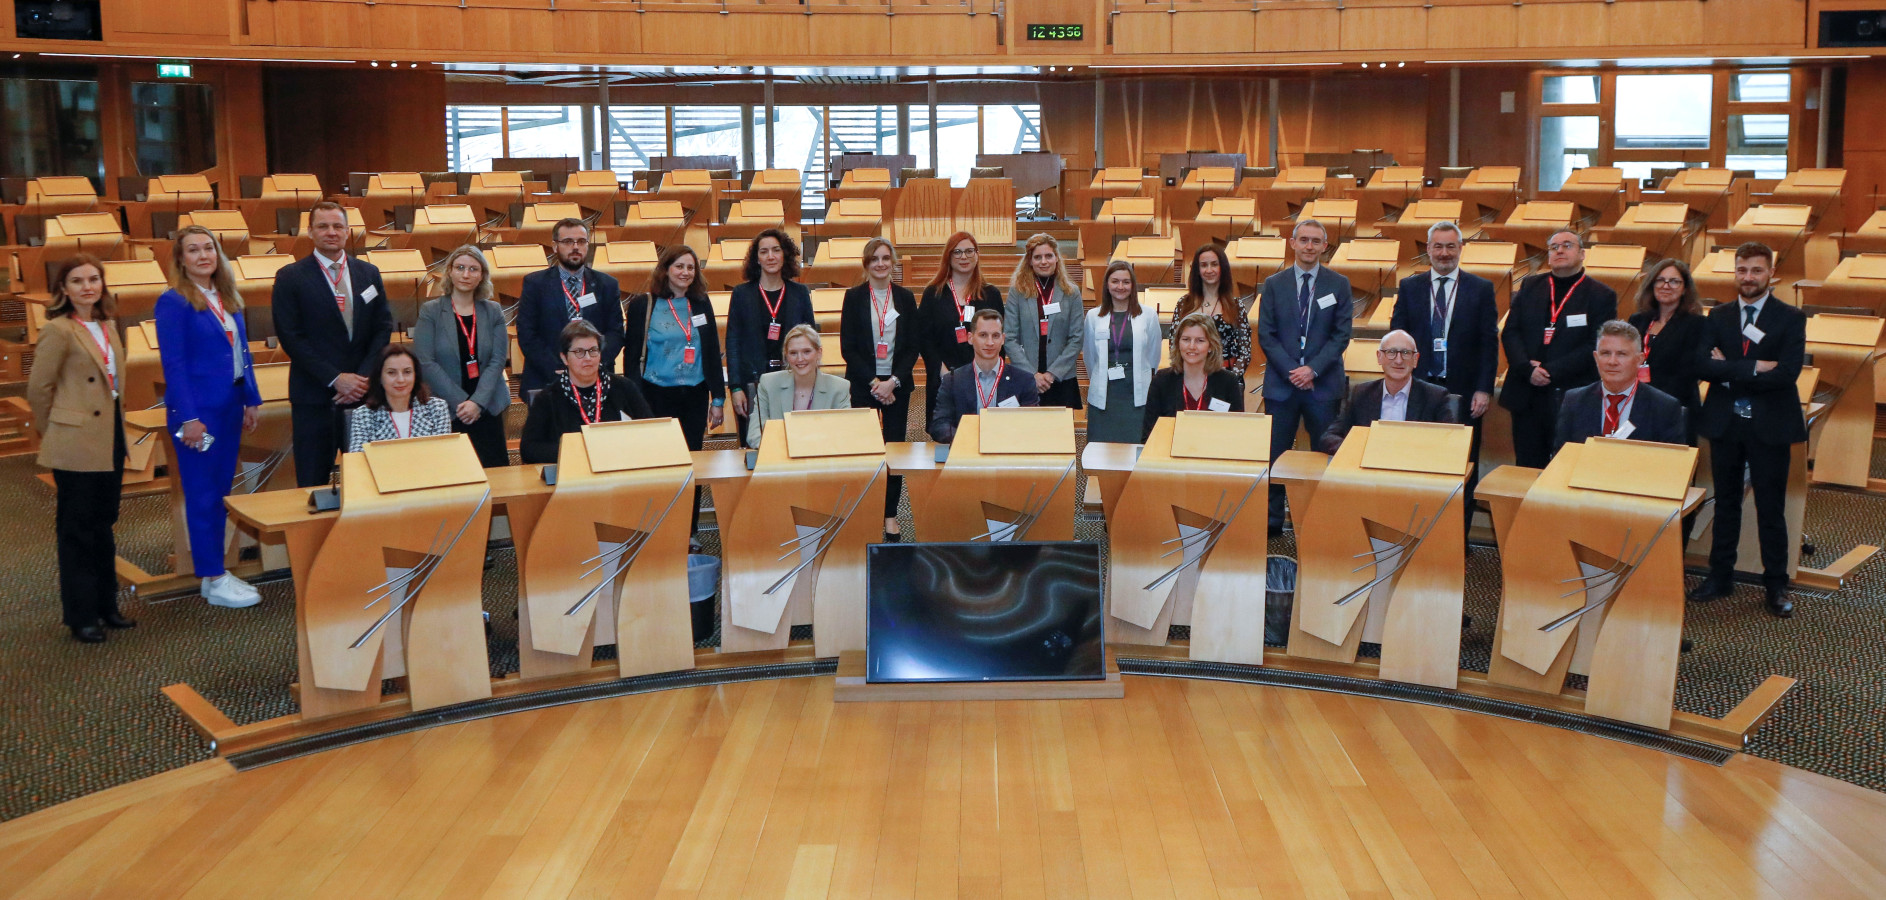 Los participantes de la conferencia, en la sede del Parlamento de Escocia